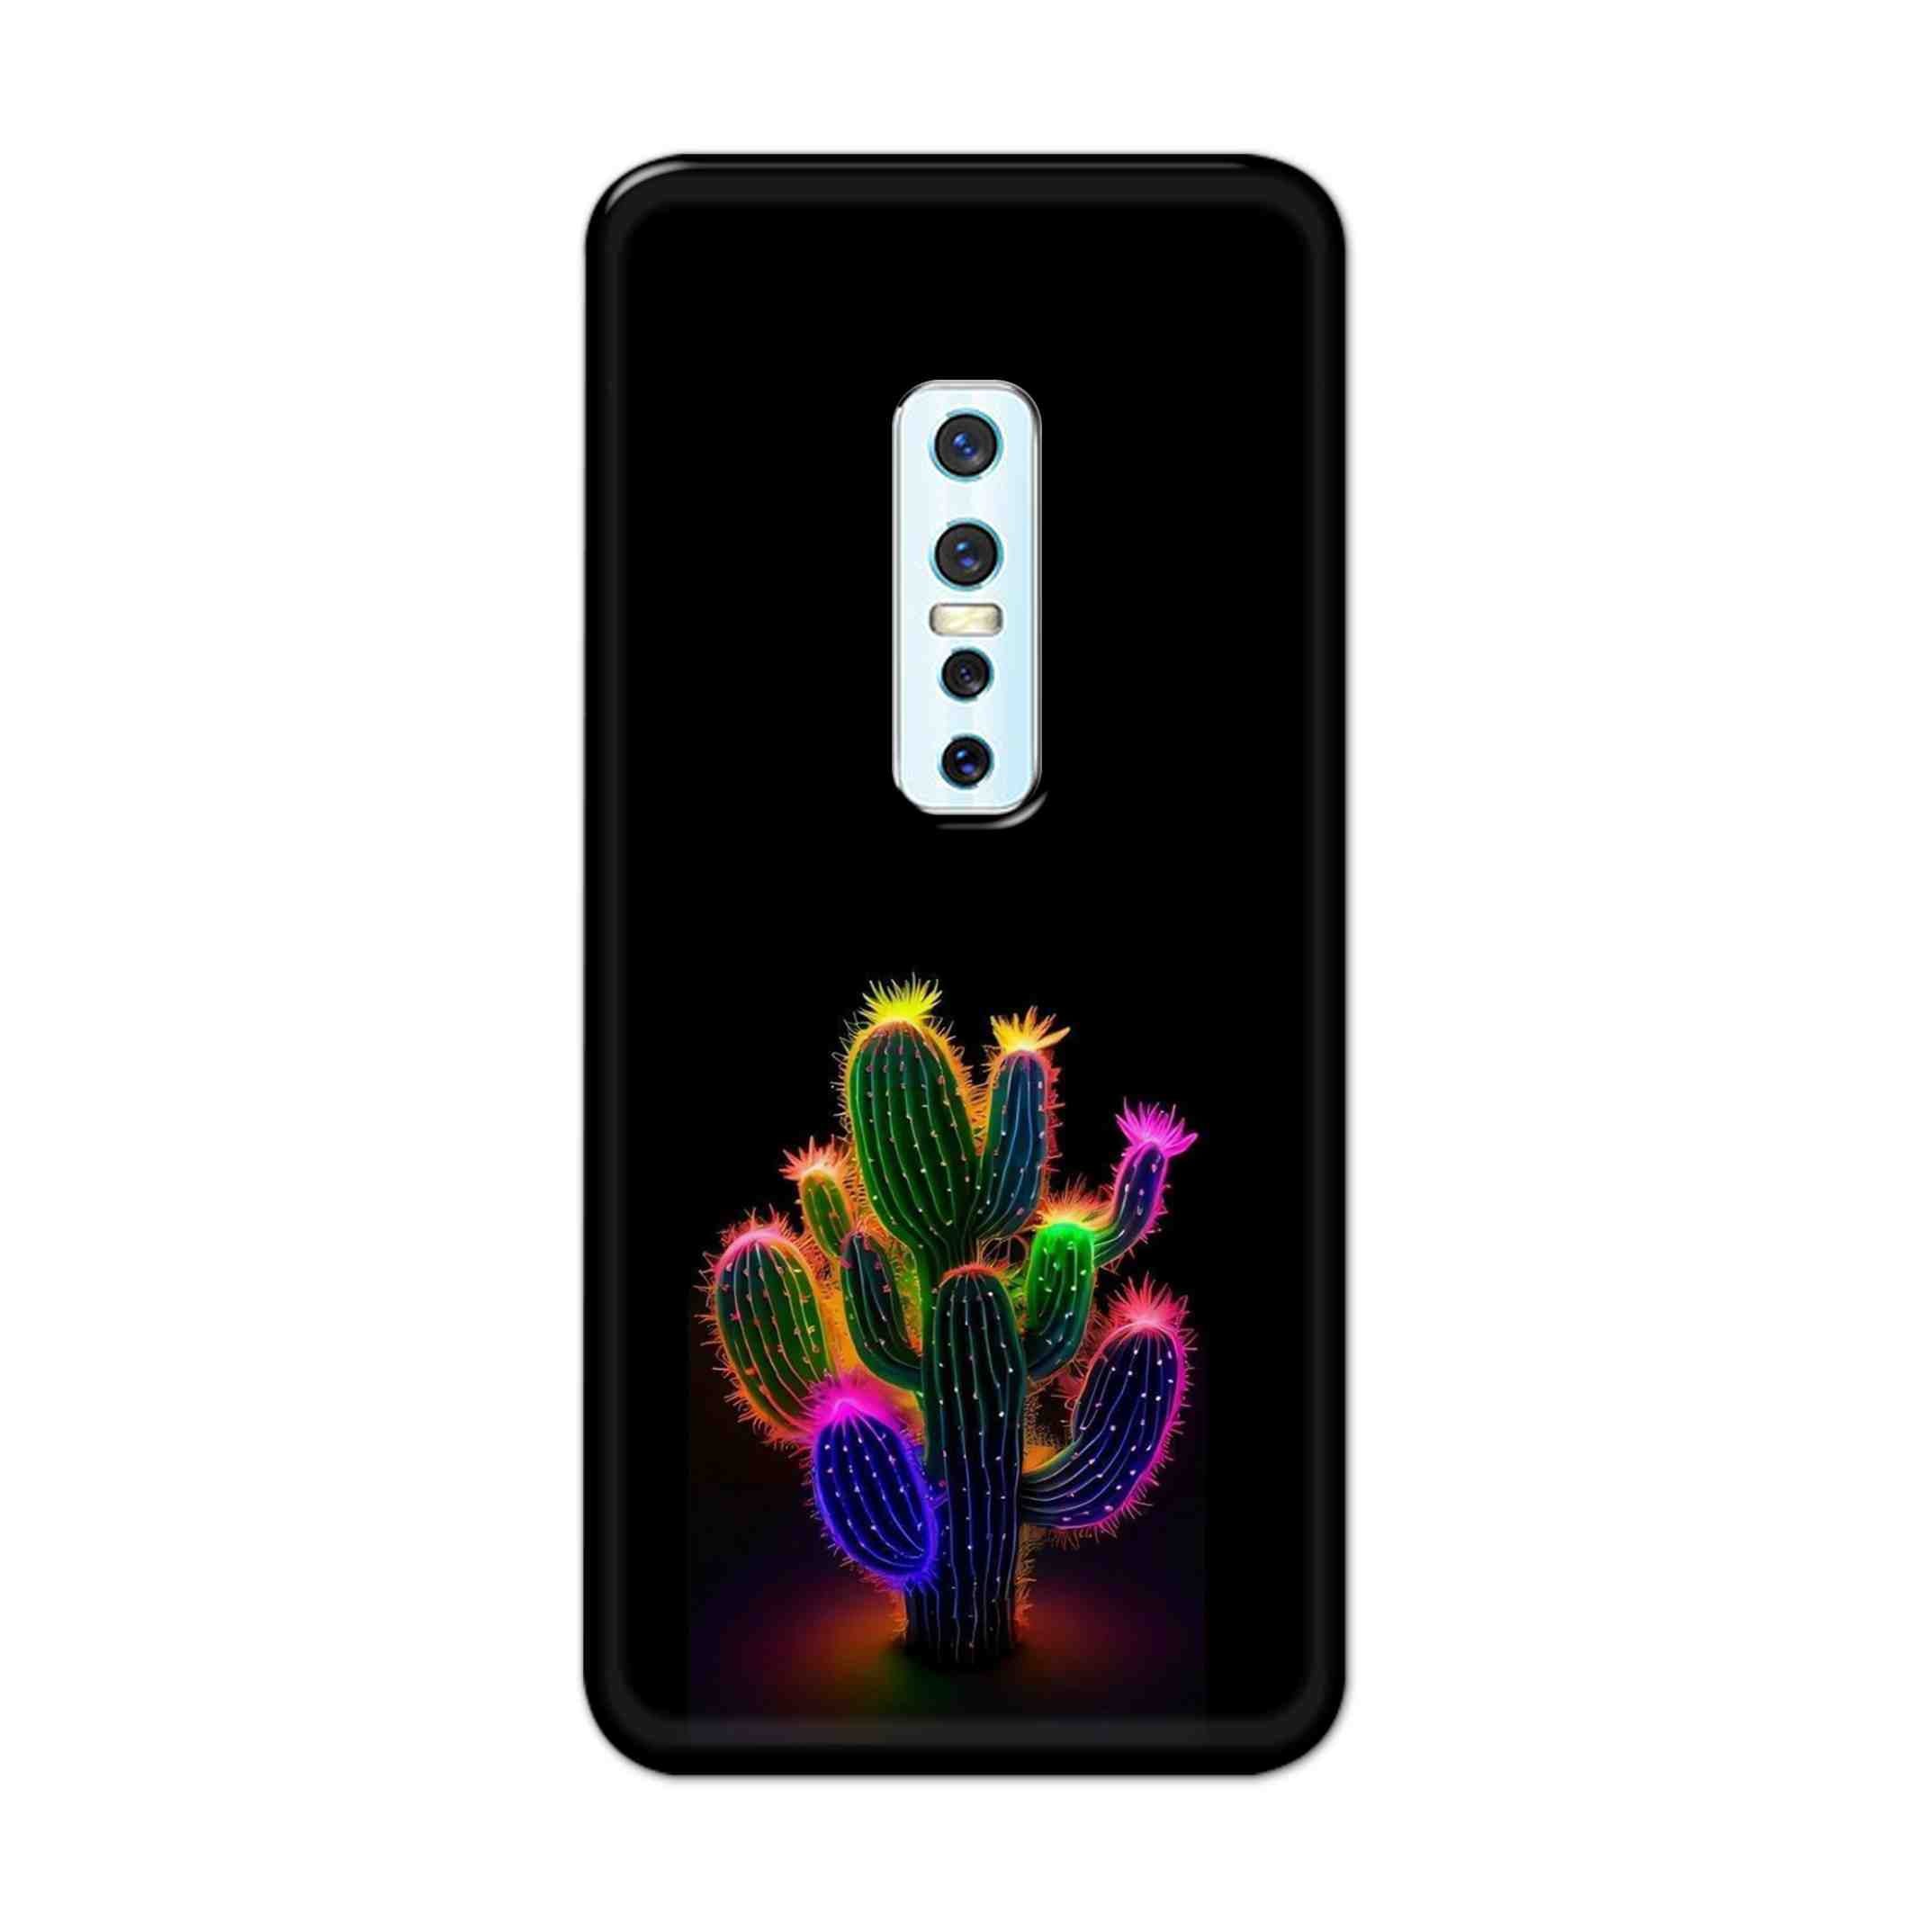 Buy Neon Flower Hard Back Mobile Phone Case Cover For Vivo V17 Pro Online